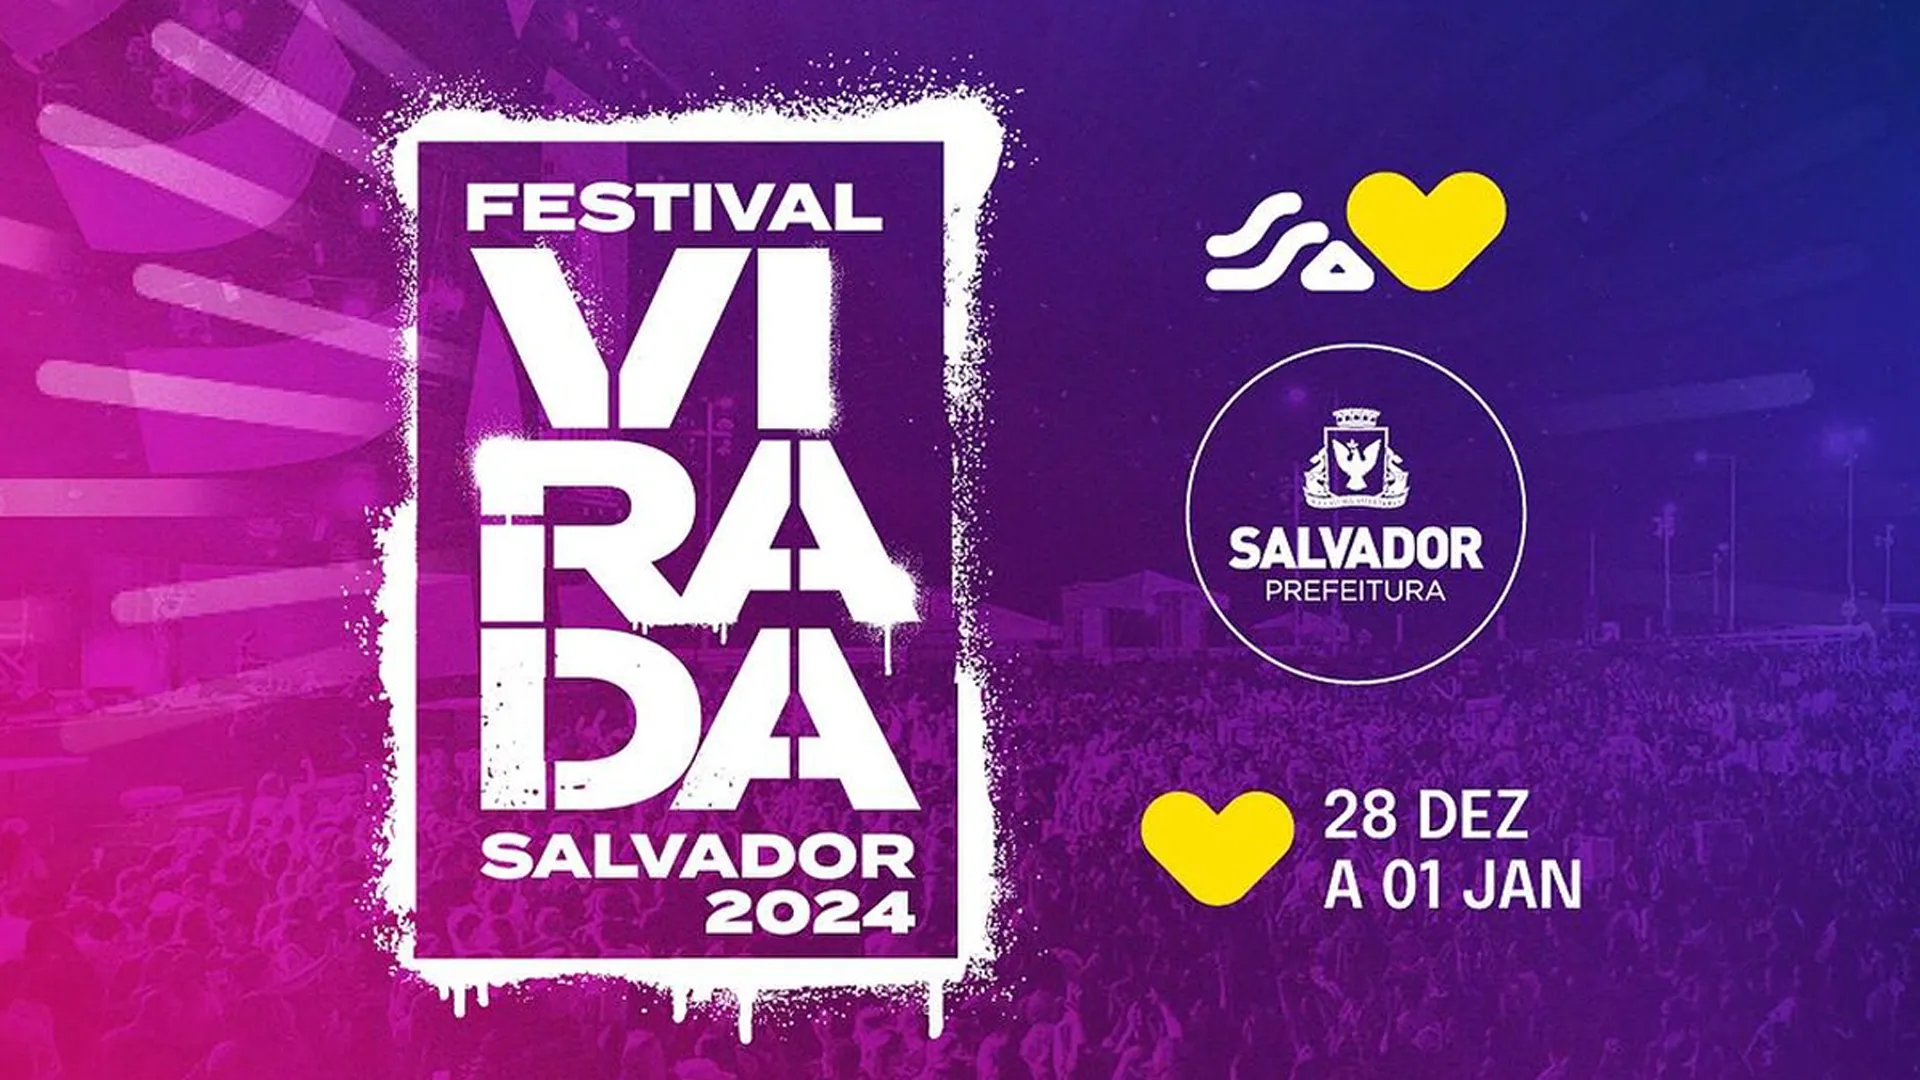 
		Festival Virada Salvador 2024 - 28 de dezembro